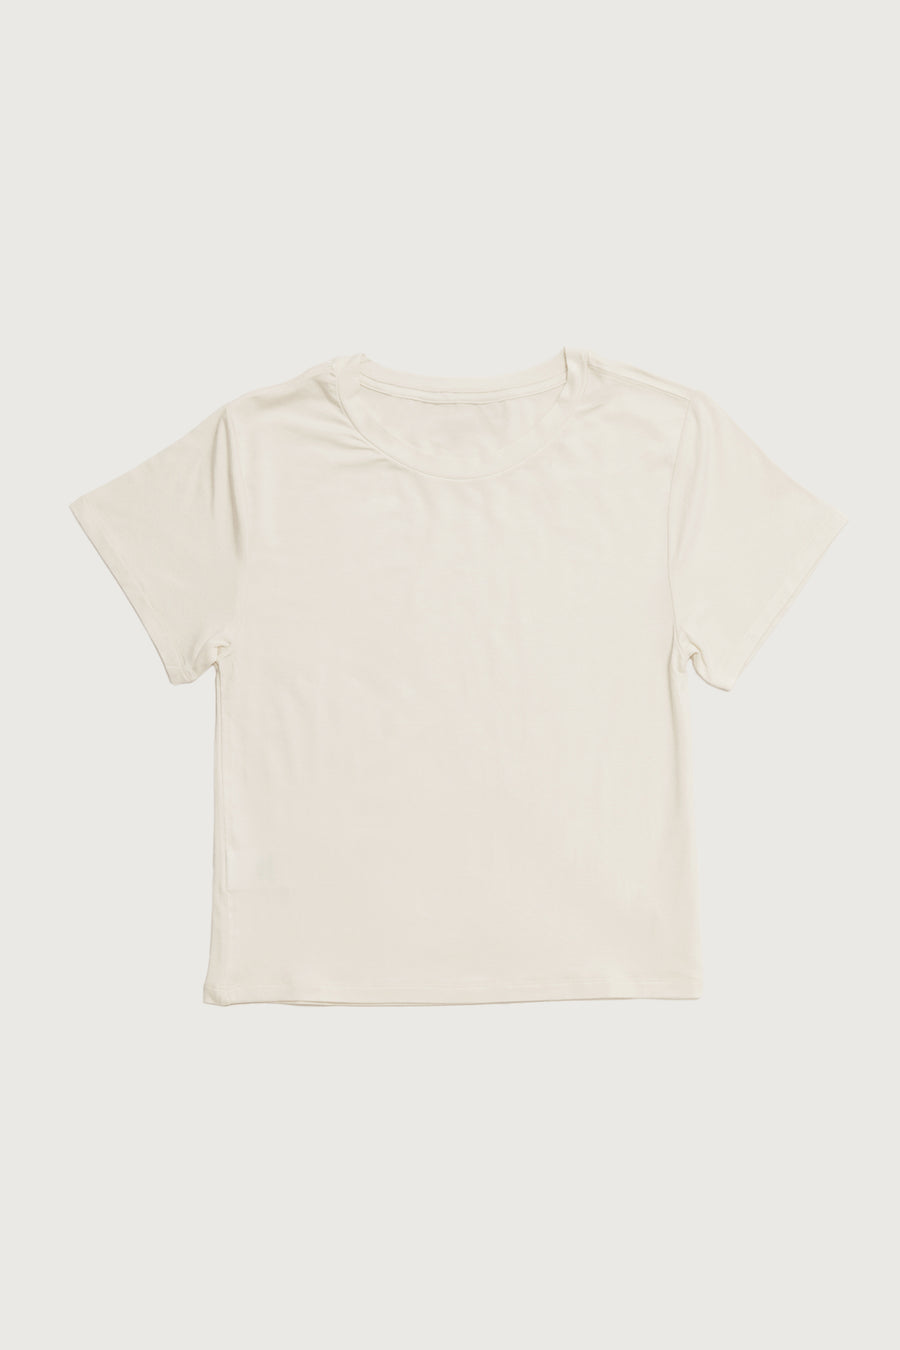 Core T-Shirt + Cream - Little Puffy